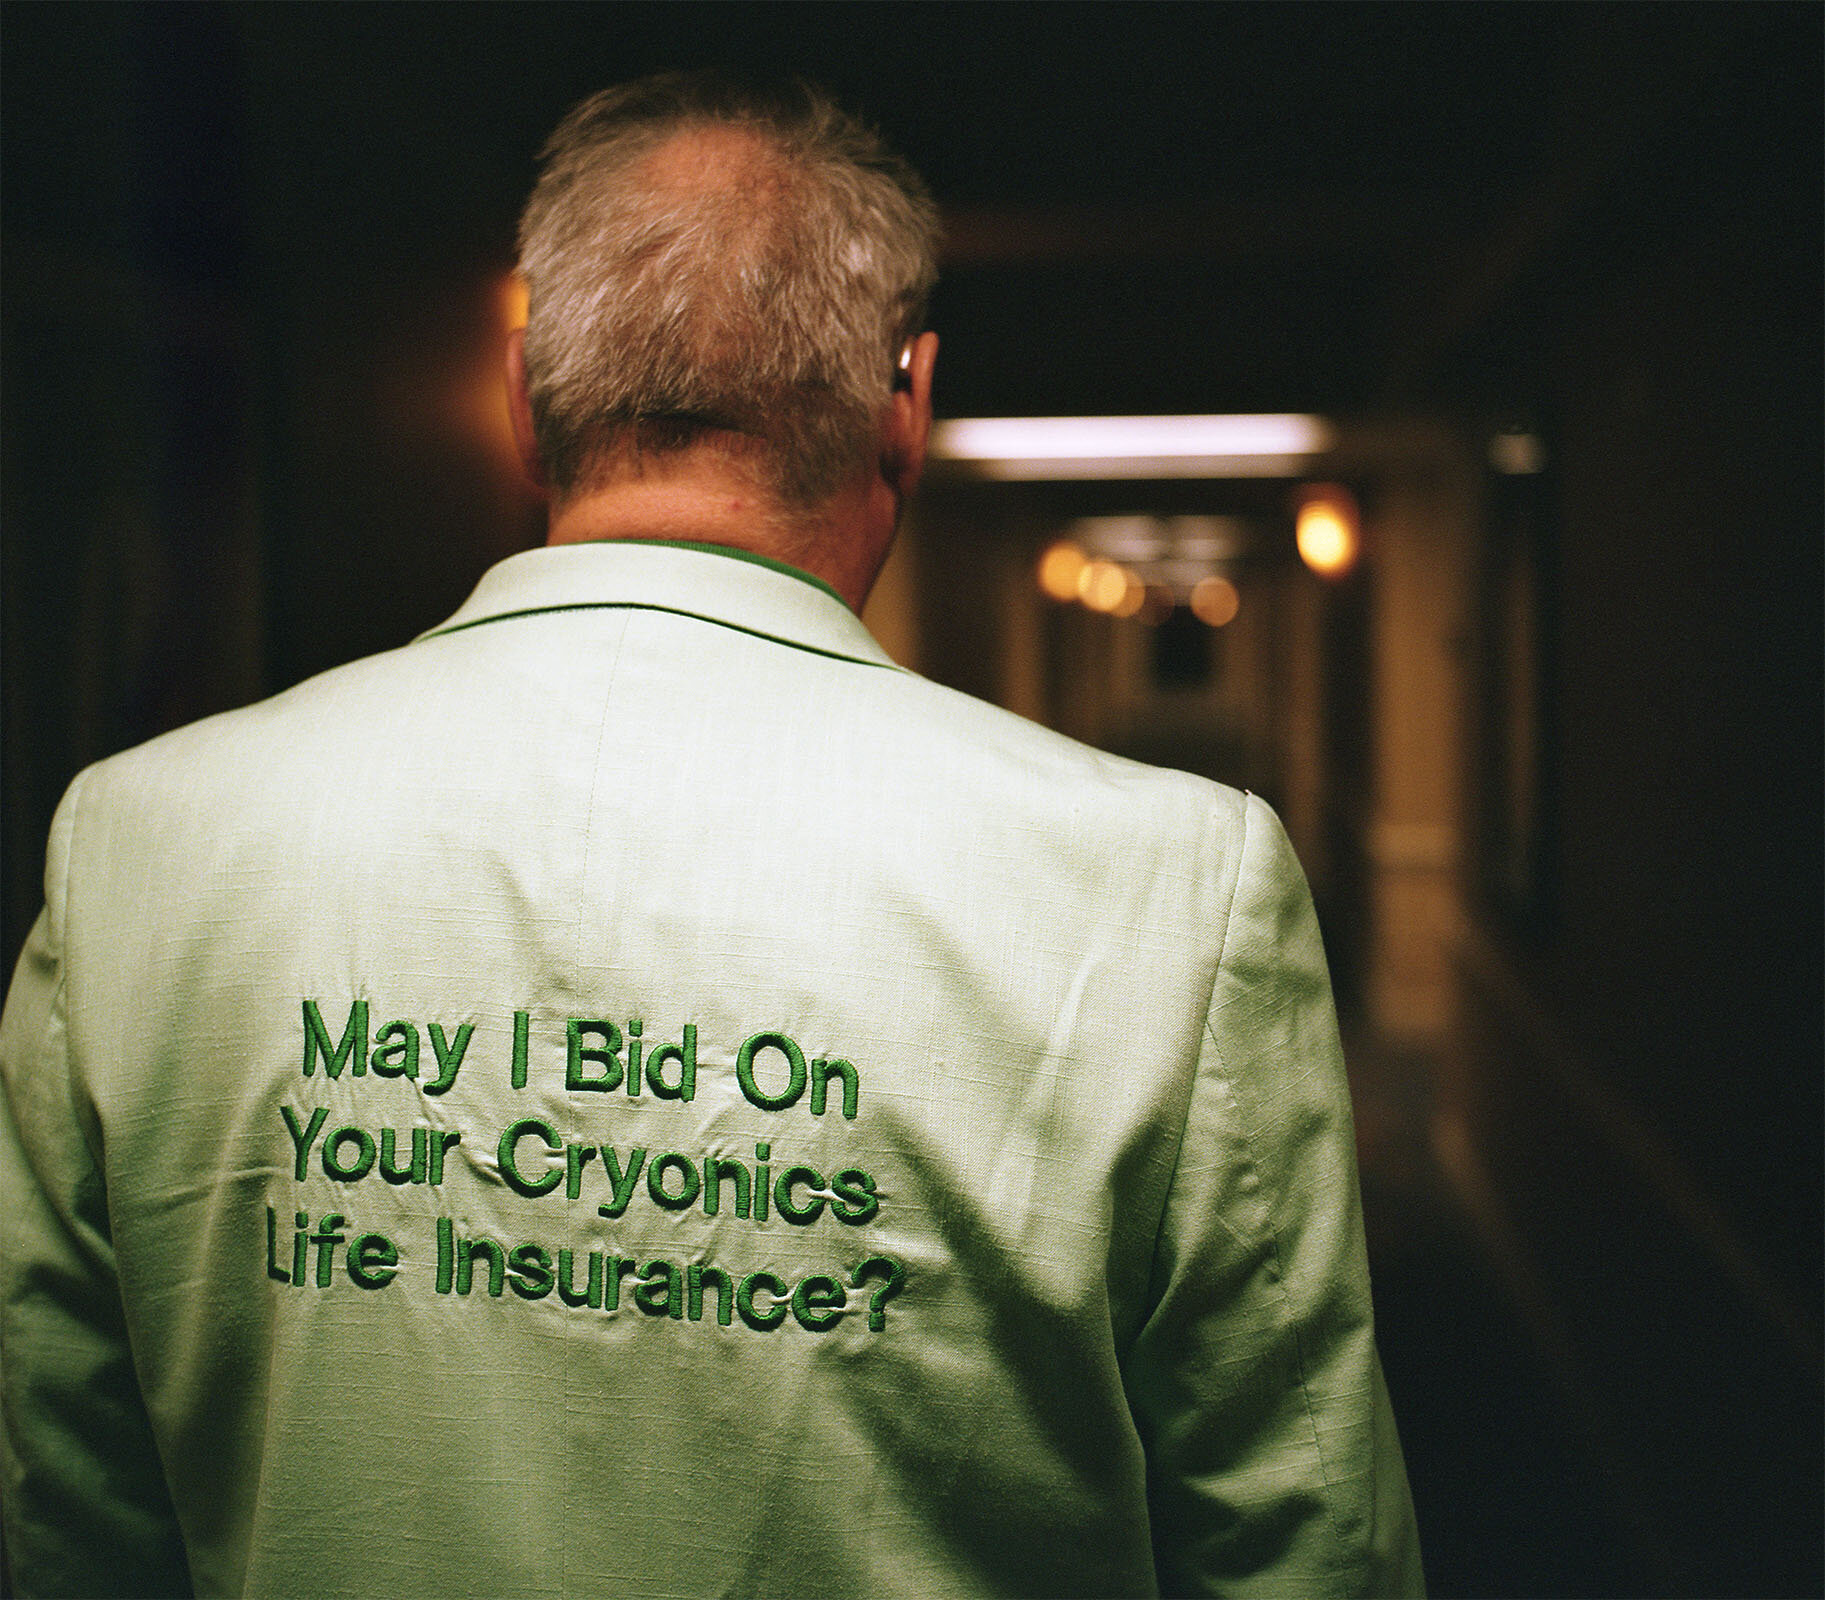  Rudi Hoffman, cryonics insurer, at RAADFest 